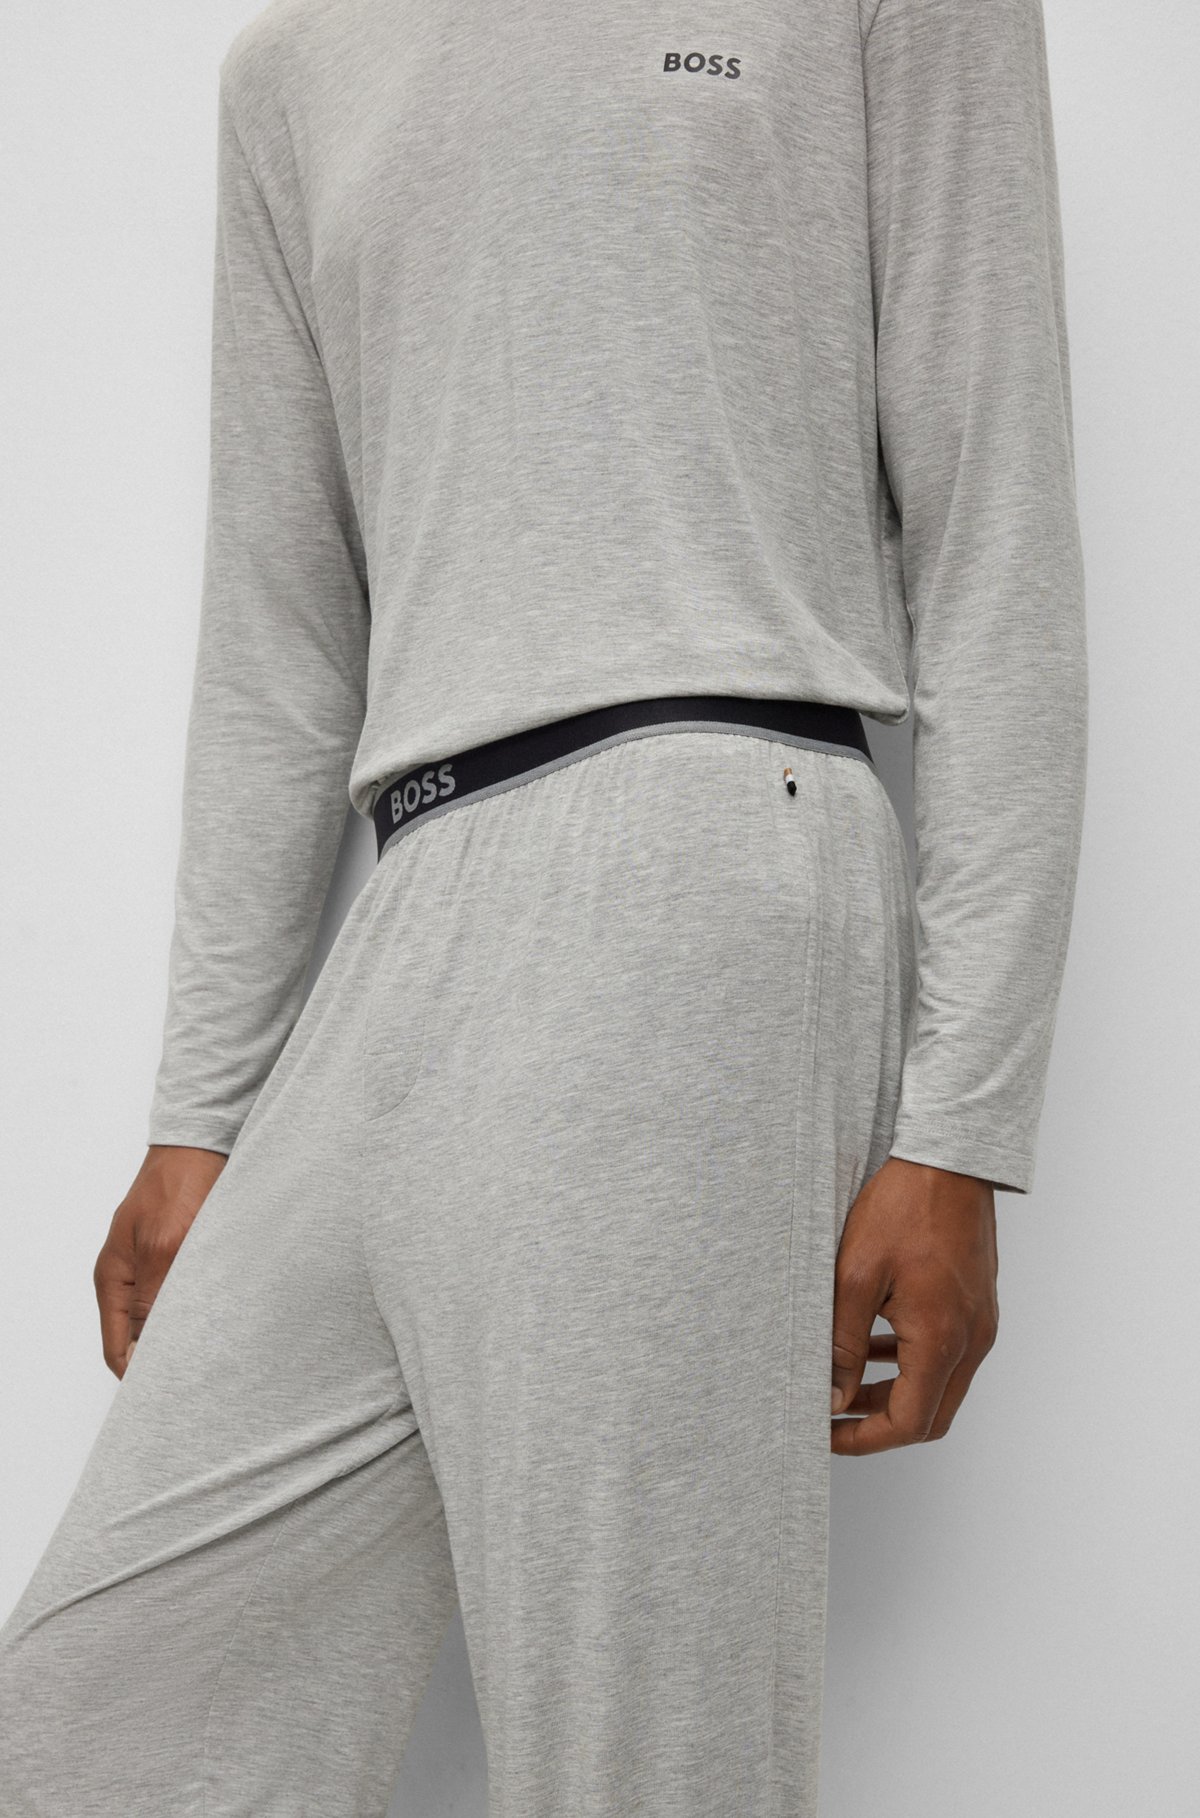 Stretch-modal pajama bottoms with logo waistband, Grey